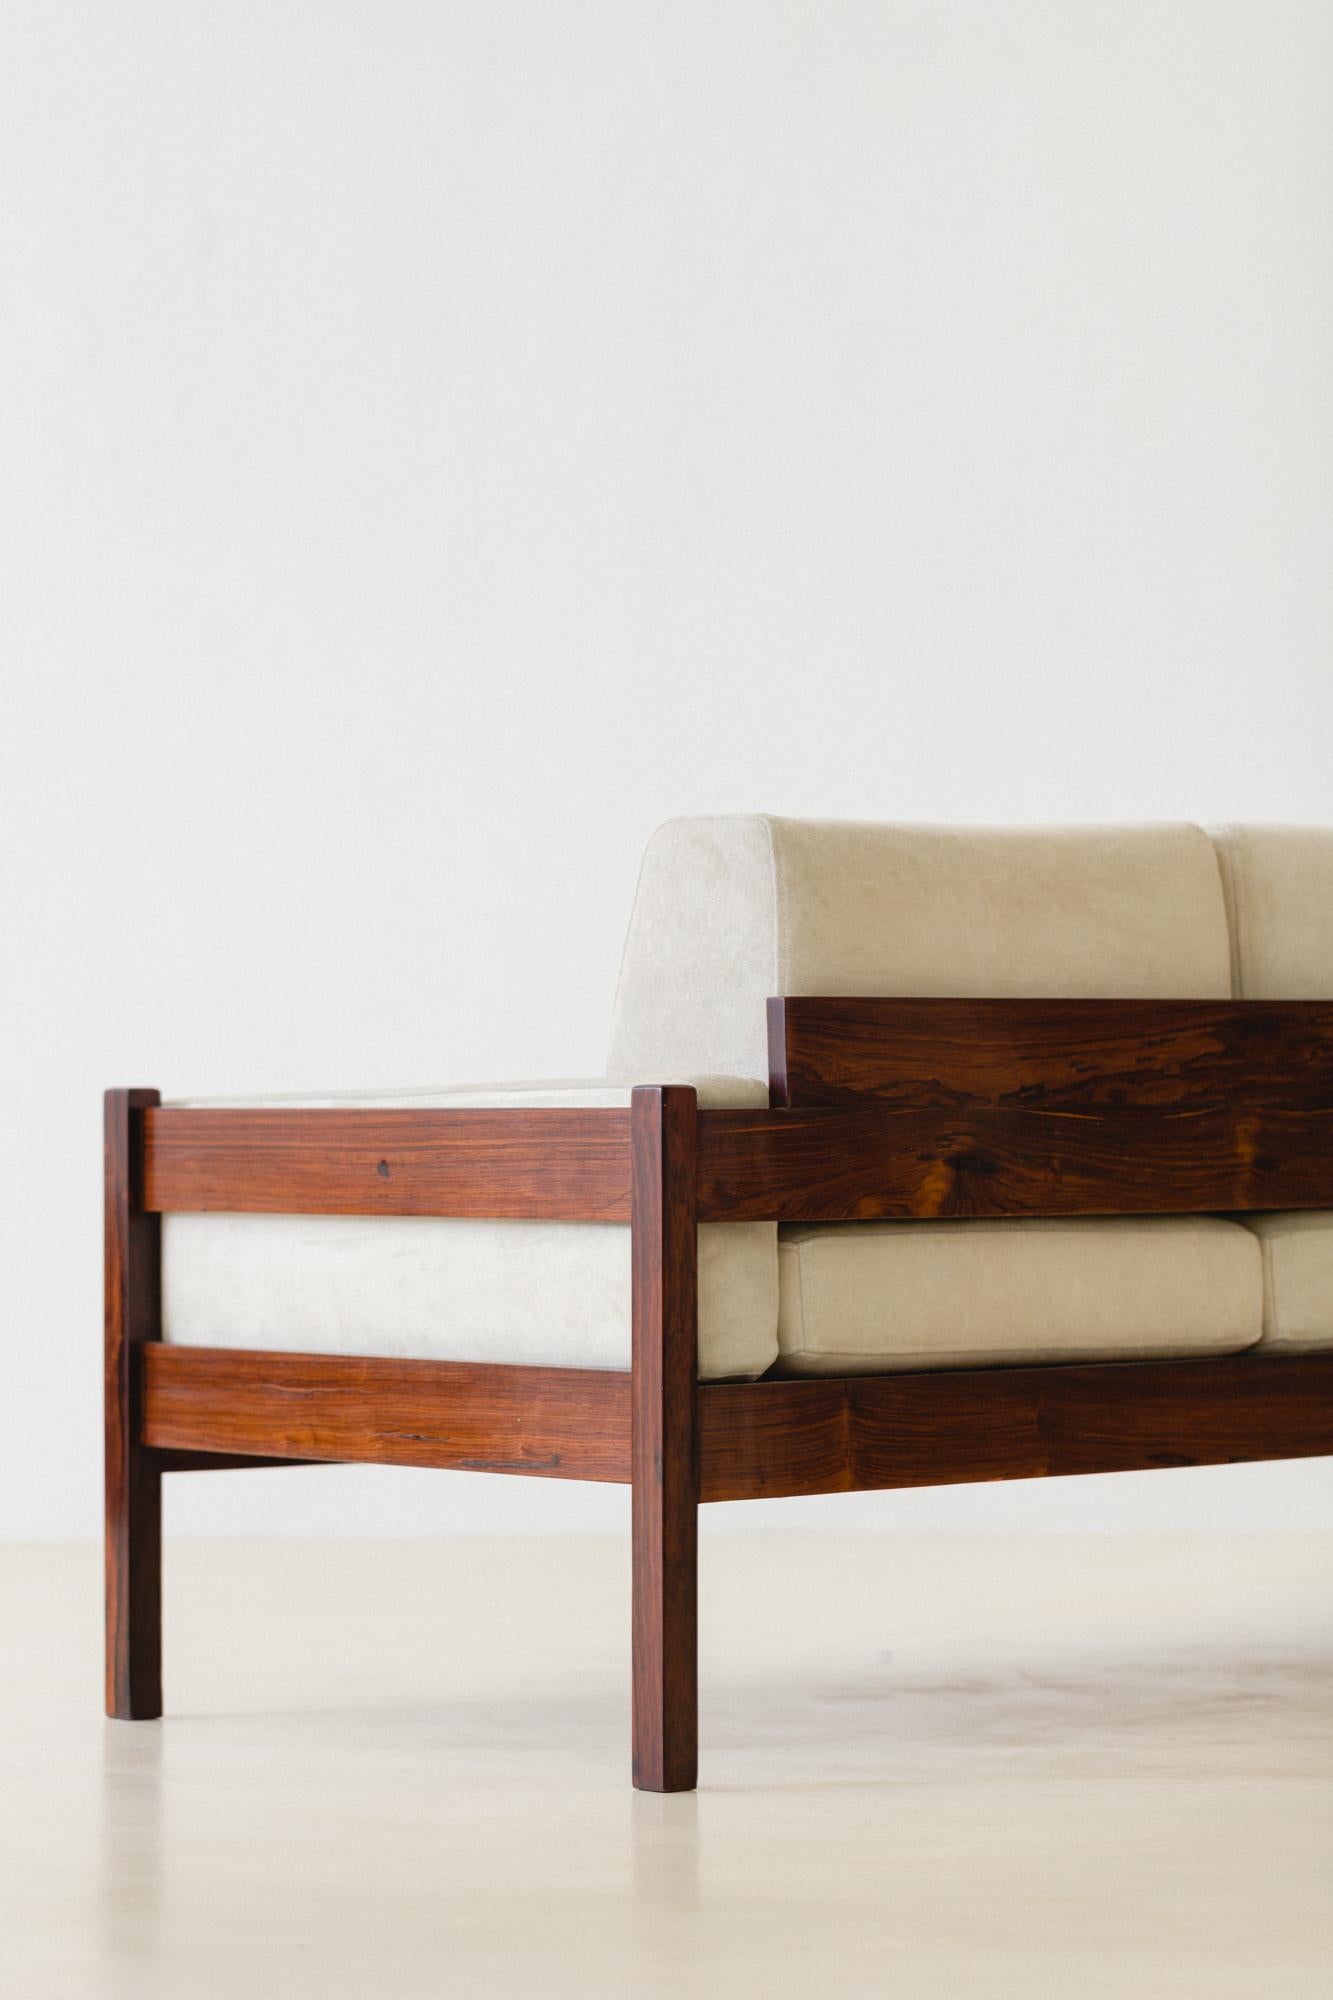 Das brasilianische Unternehmen Celina Decorações stellte dieses Sofa in den 1960er Jahren her. Das Möbelstück besteht aus einer massiven Palisanderstruktur, die Kissen sind mit Leder bezogen. 

Dieses Dreisitzer-Sofa hat abnehmbare Kissen, eine